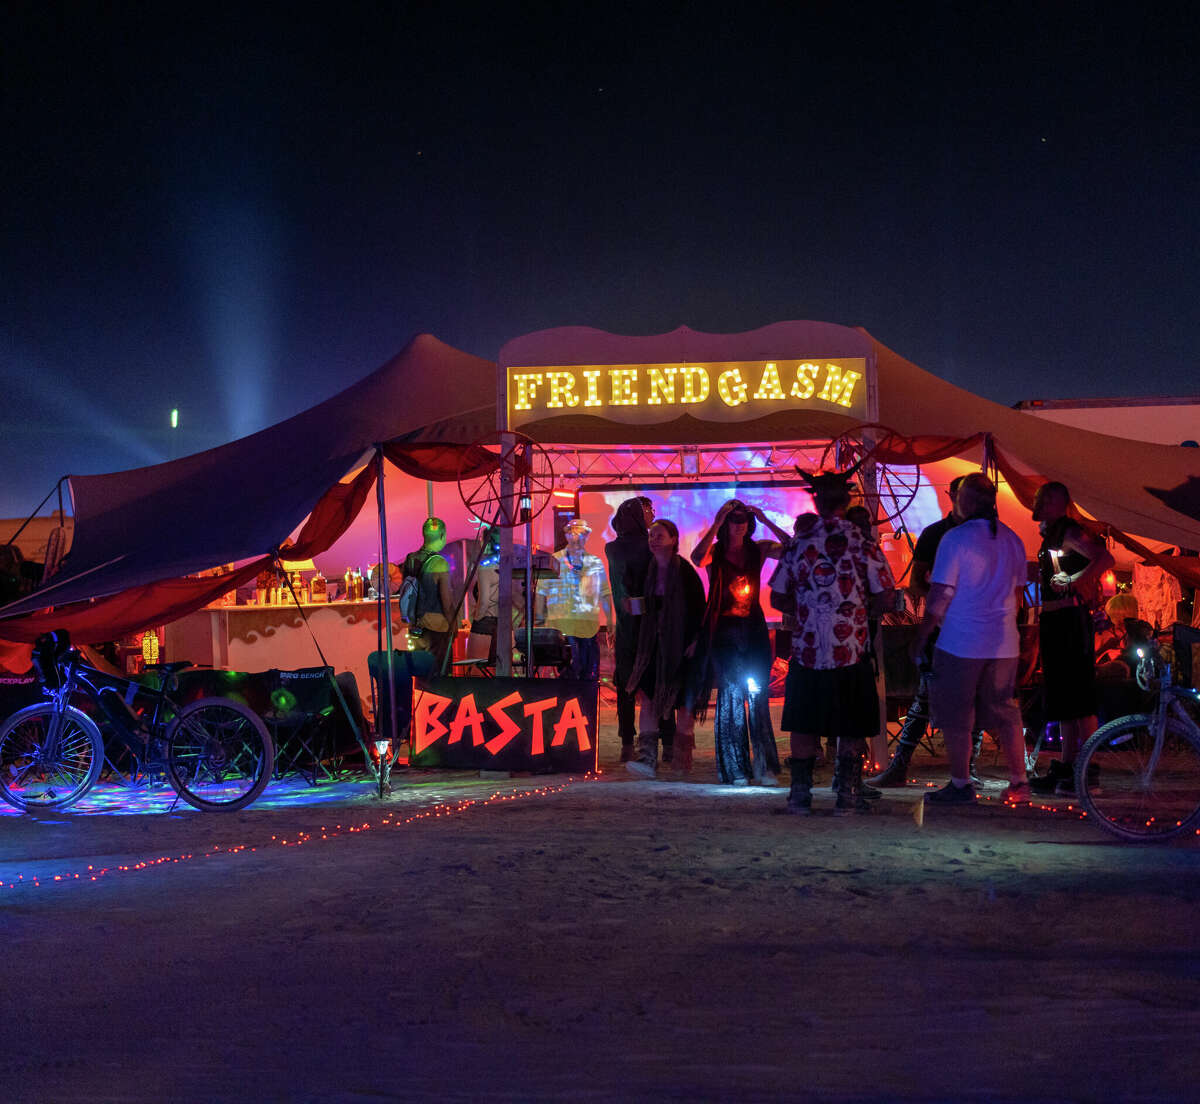 El campamento de Friendgasm se representa en Burning Man 2022. Matt Mihaly, uno de los miembros del equipo, es responsable de una broma que convenció a miles de personas de que Rufus du Sol actuaría.